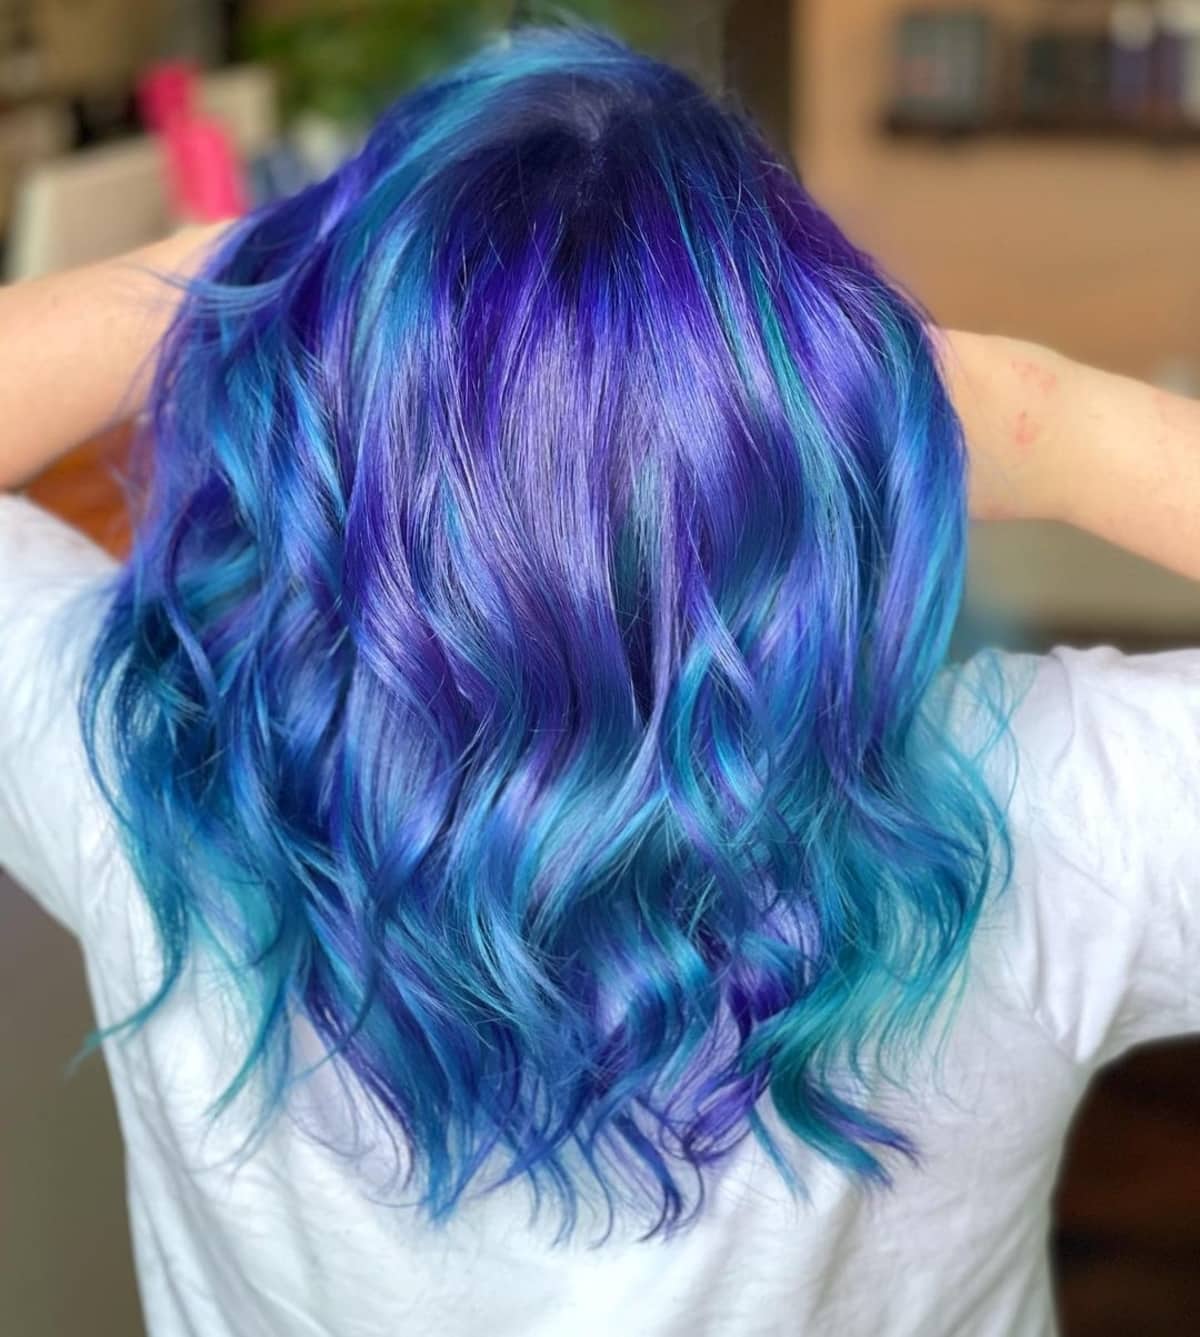 Blue and teal rainbow hair